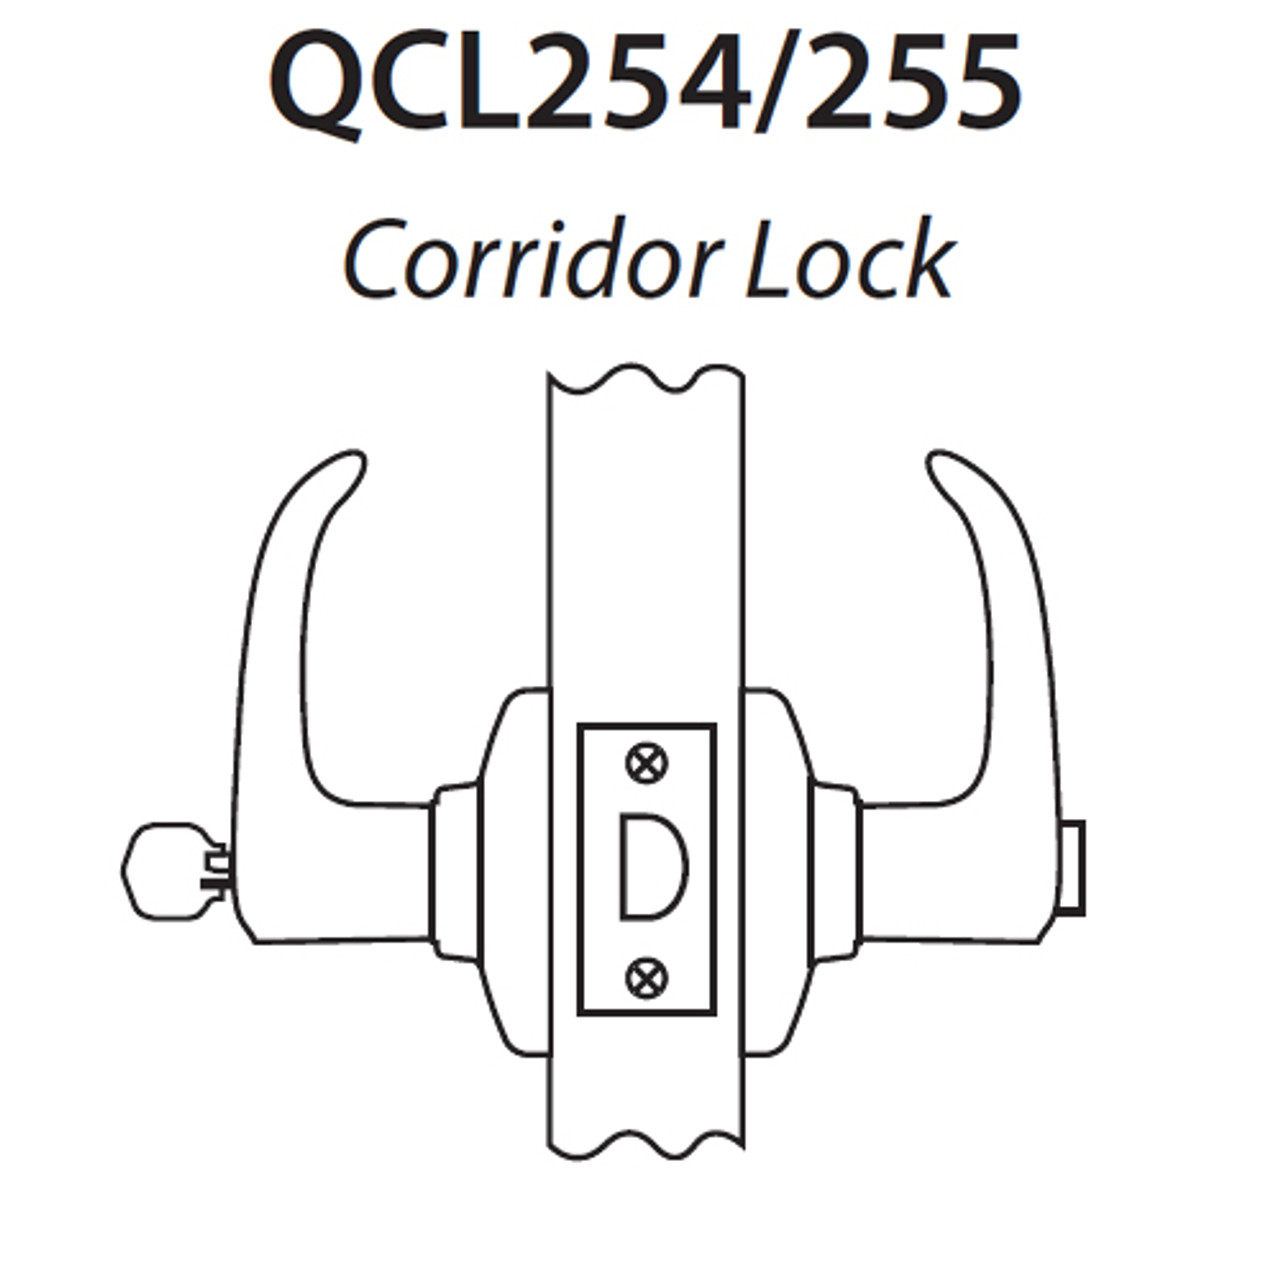 QCL254E619S4FLSSC Stanley QCL200 Series Ansi Strike Schlage "C" Corridor Lock with Sierra Lever in Satin Nickel